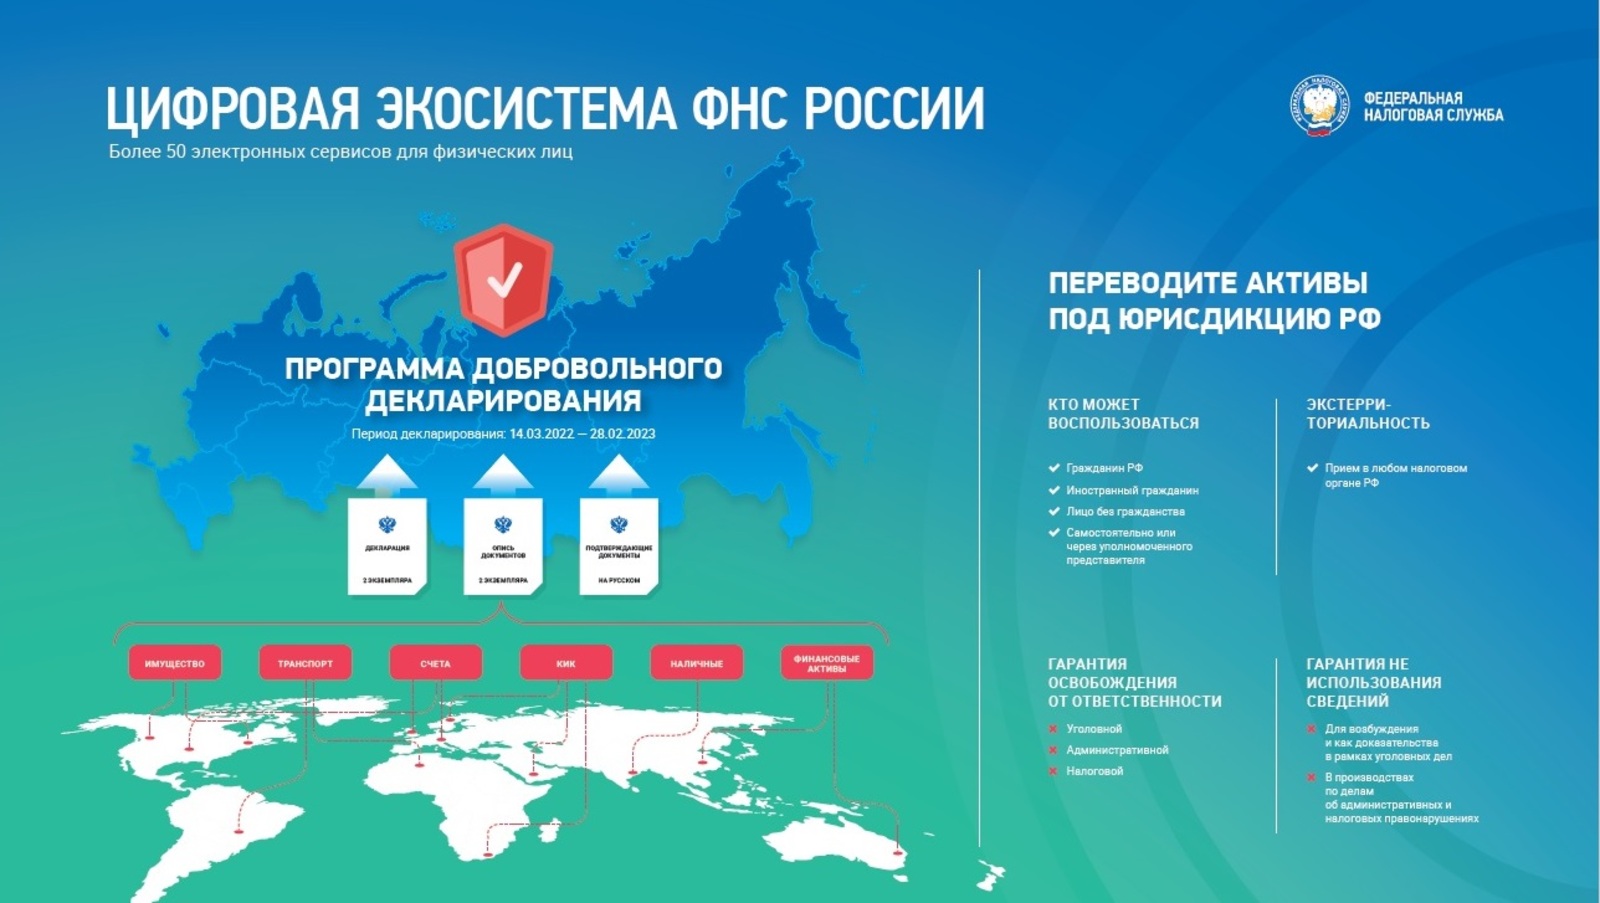 Цифровая экосистема ФНМ России